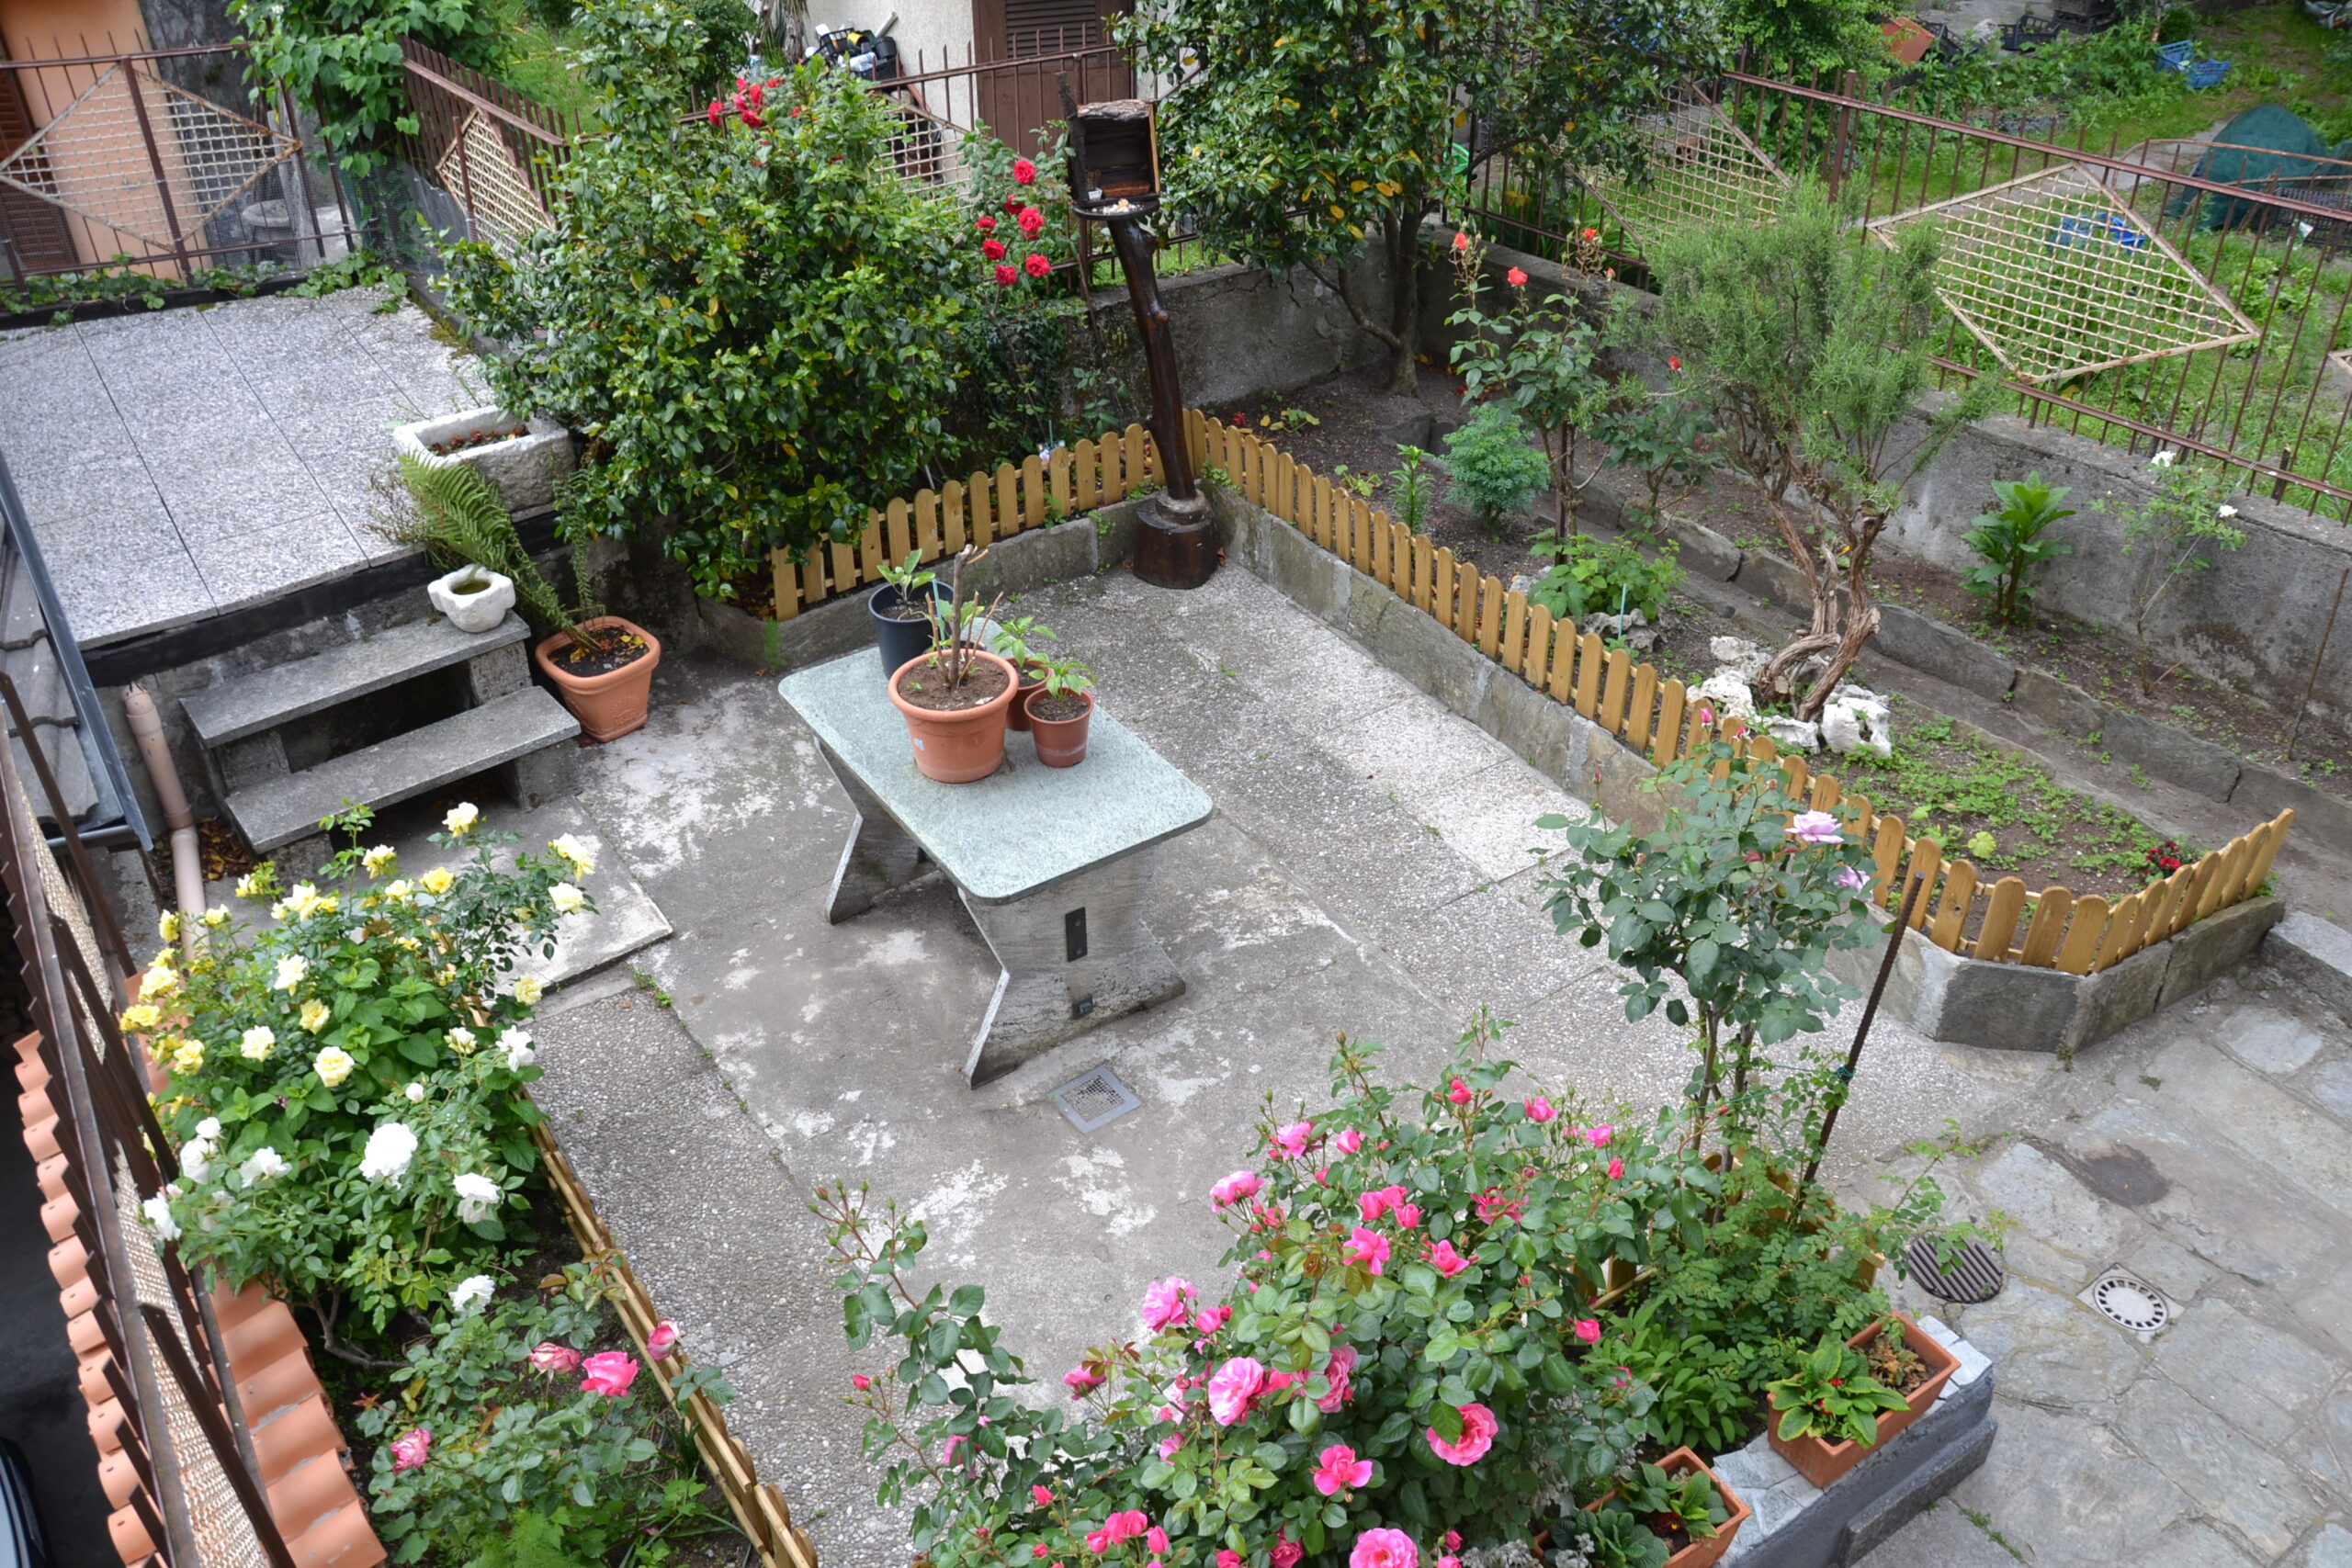 Anteprima foto Casa semi indipendente con giardino, Ornavasso